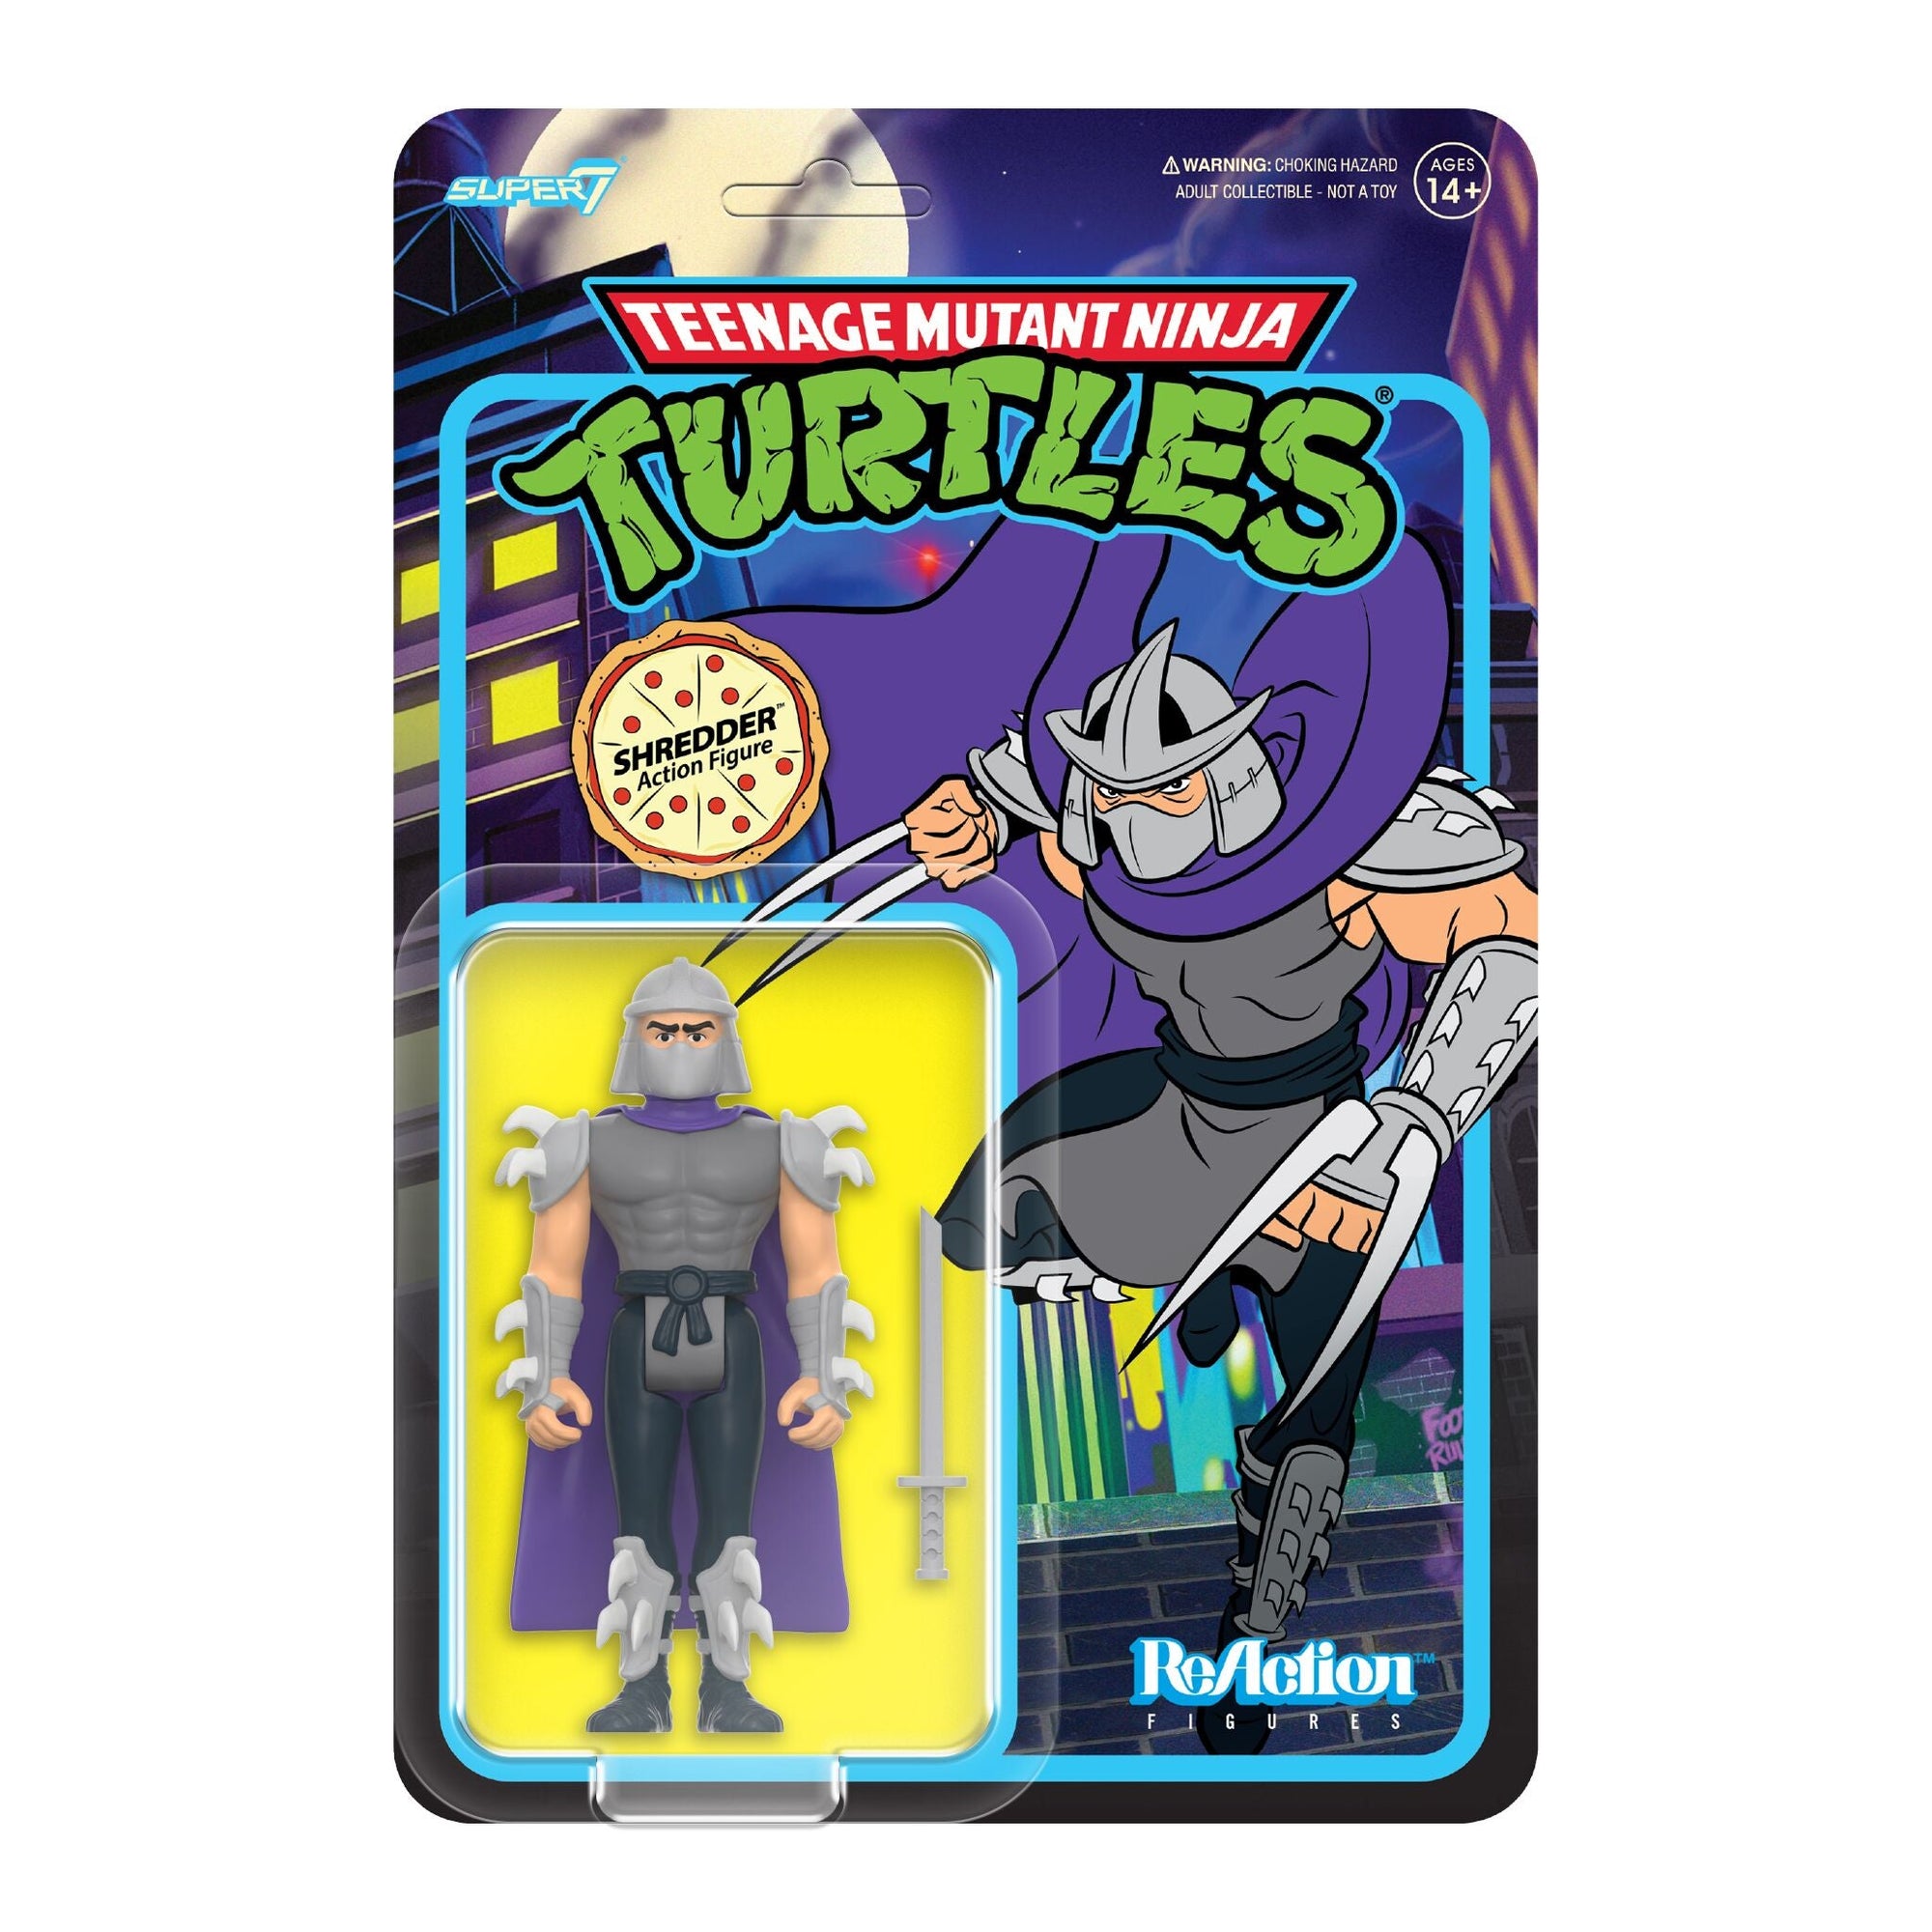 Shredder (Cartoon) - Teenage Mutant Ninja Turtles by Super7